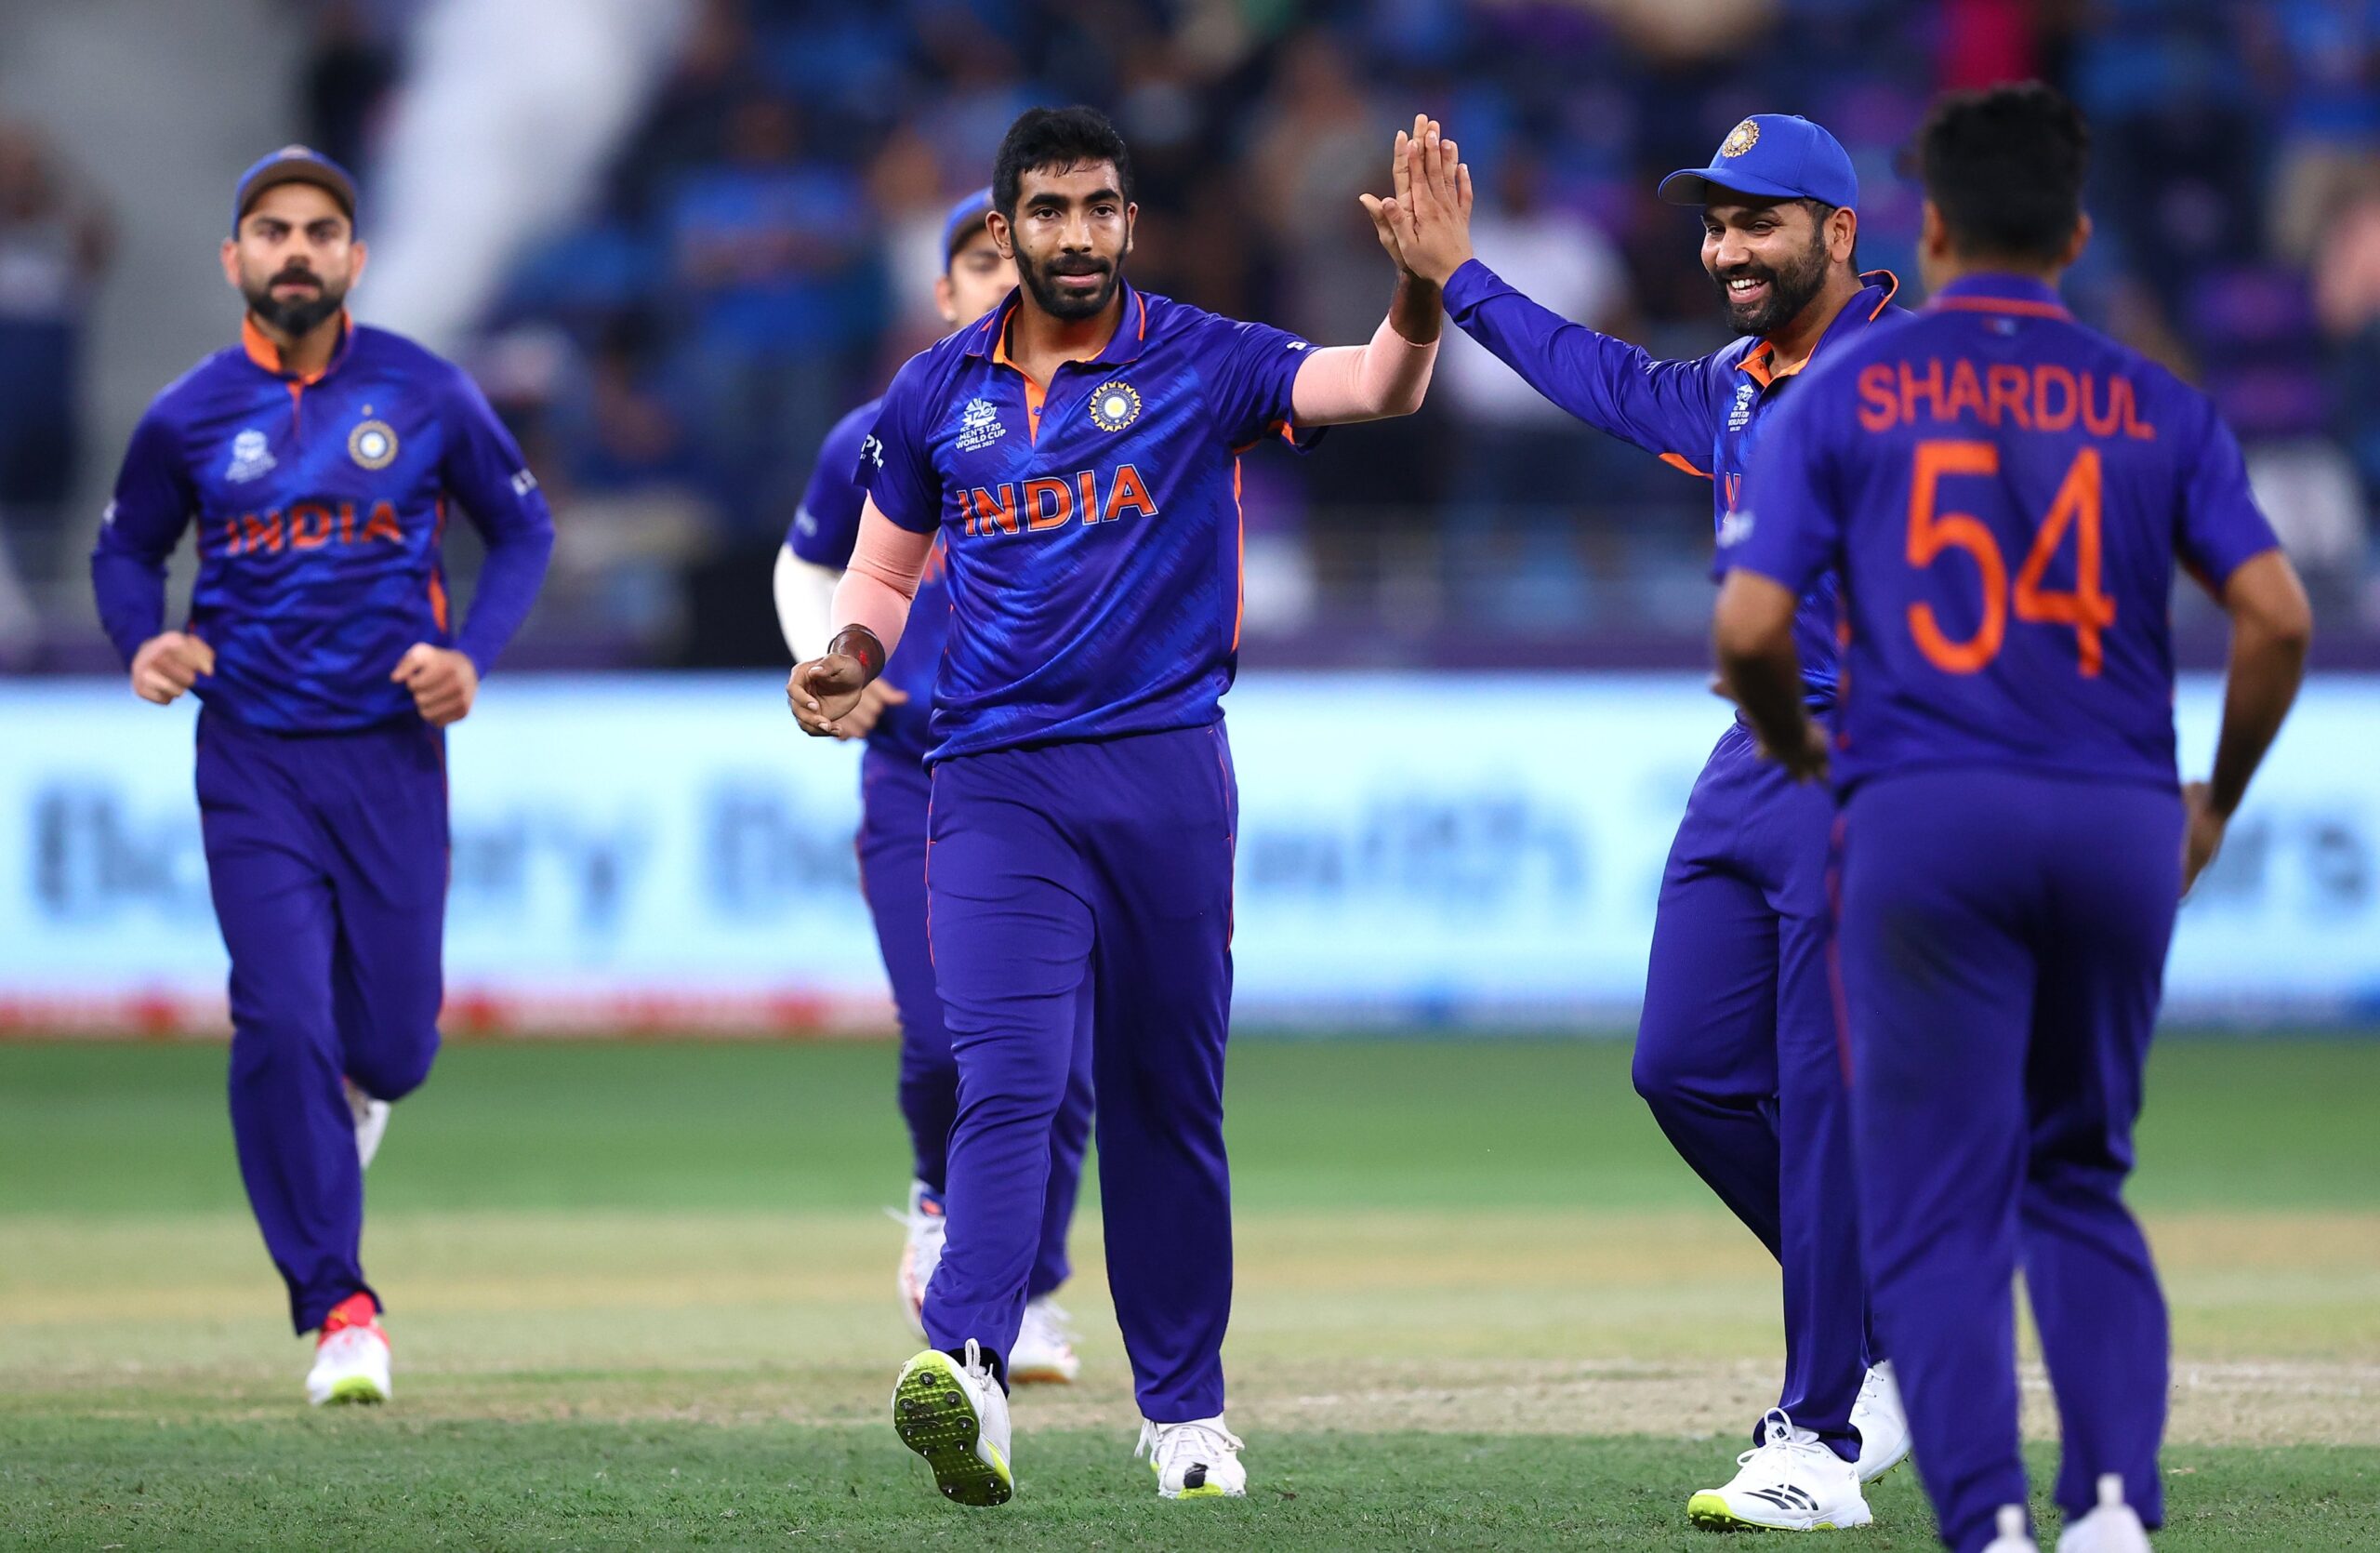 ICC T20 World Cup 2021: न्यूजीलैंड के खिलाफ भारत की शर्मनाक हार, सेमीफाइनल की रेस से लगभग बाहर हुई टीम 2